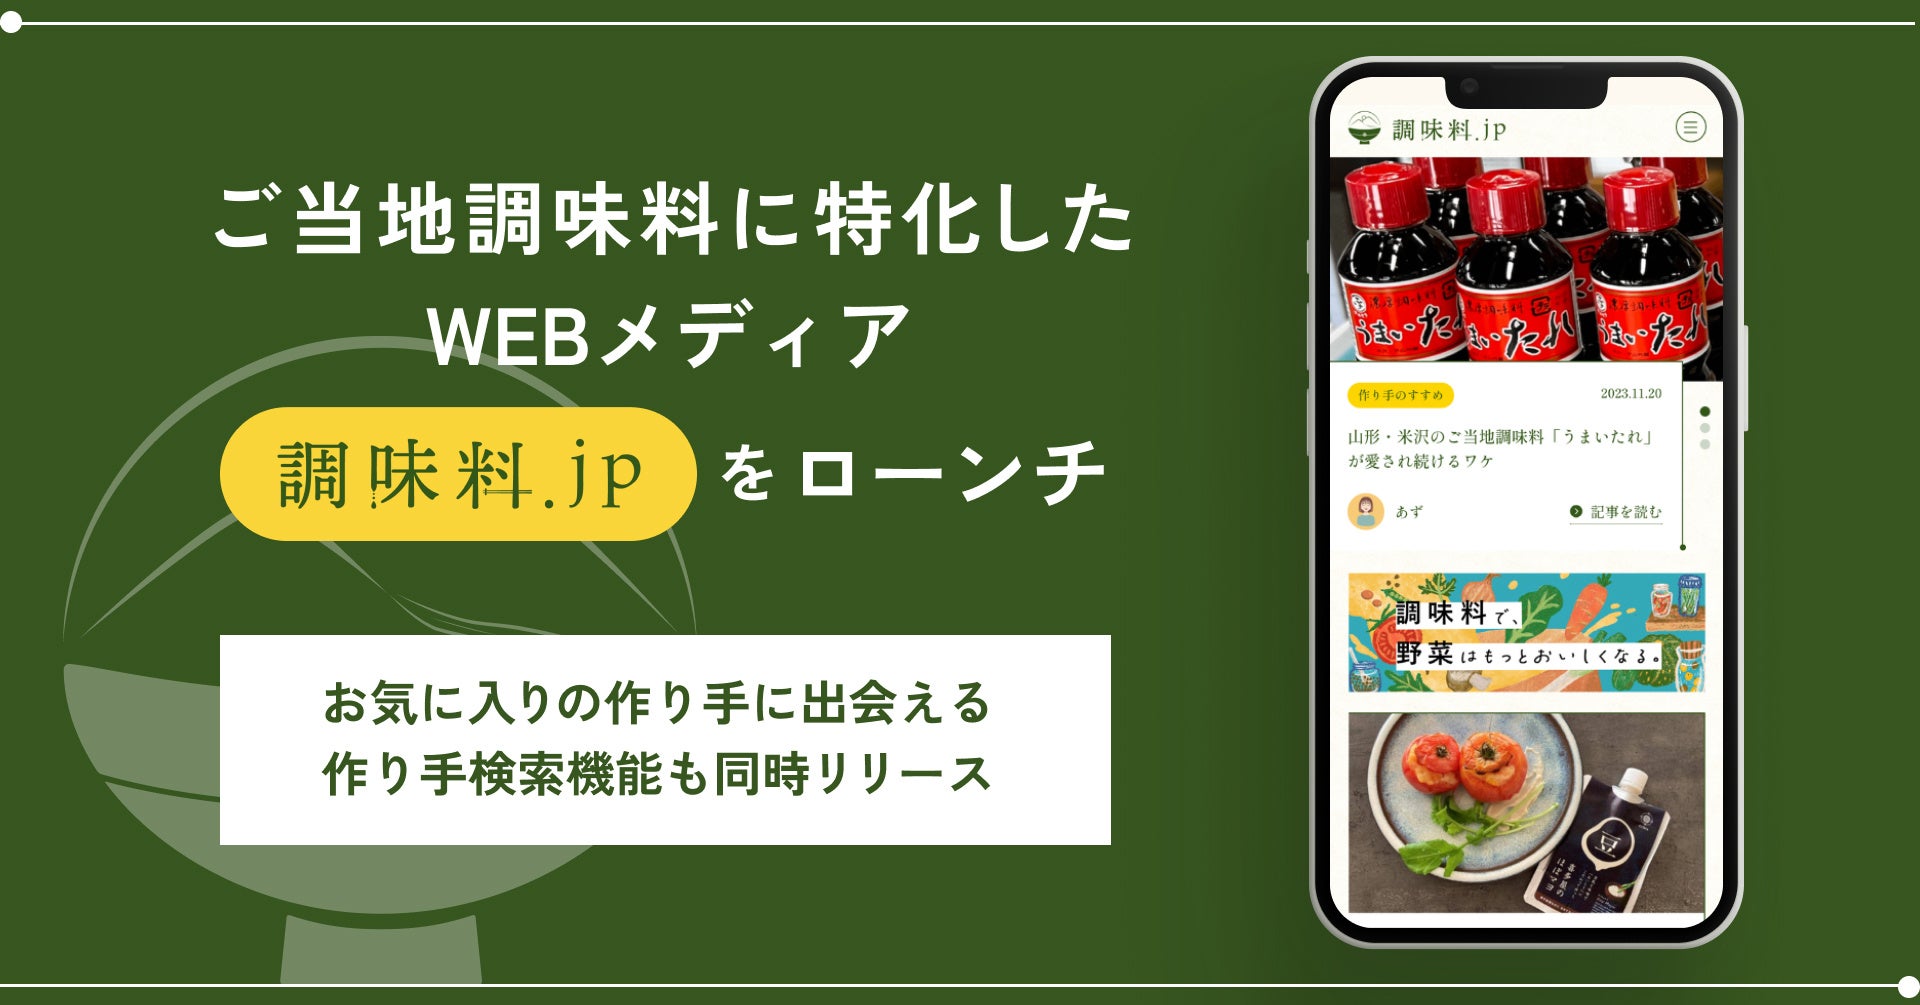 ご当地調味料とその作り手のストーリーにフォーカスすることで日本各地の食文化を深掘るWEBメディア「調味料.jp」をローンチ